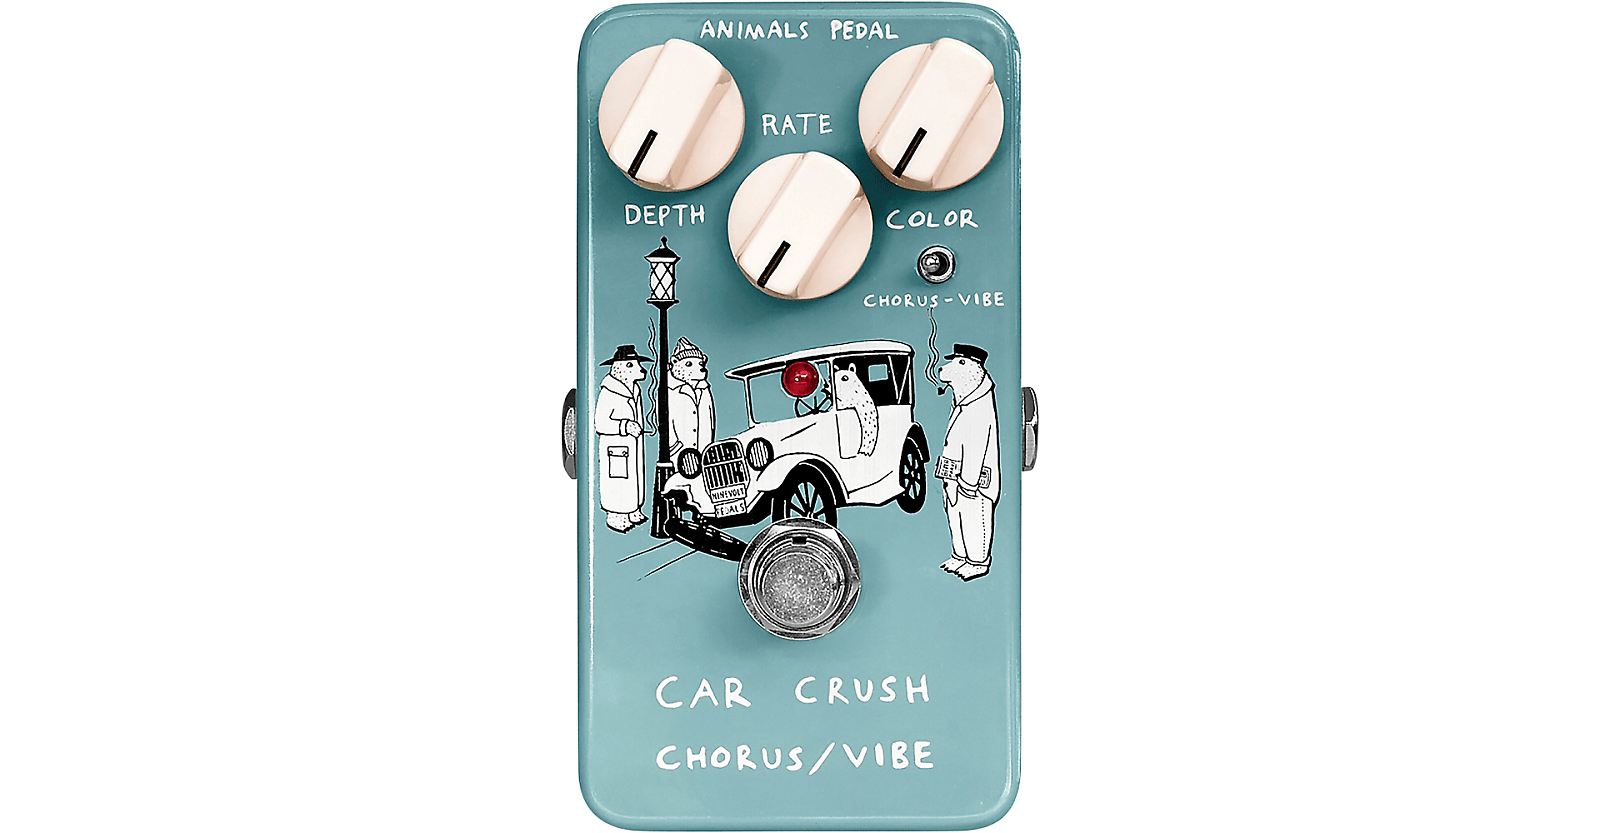 Animals Pedal Car Crush Chorus / Vibe V1